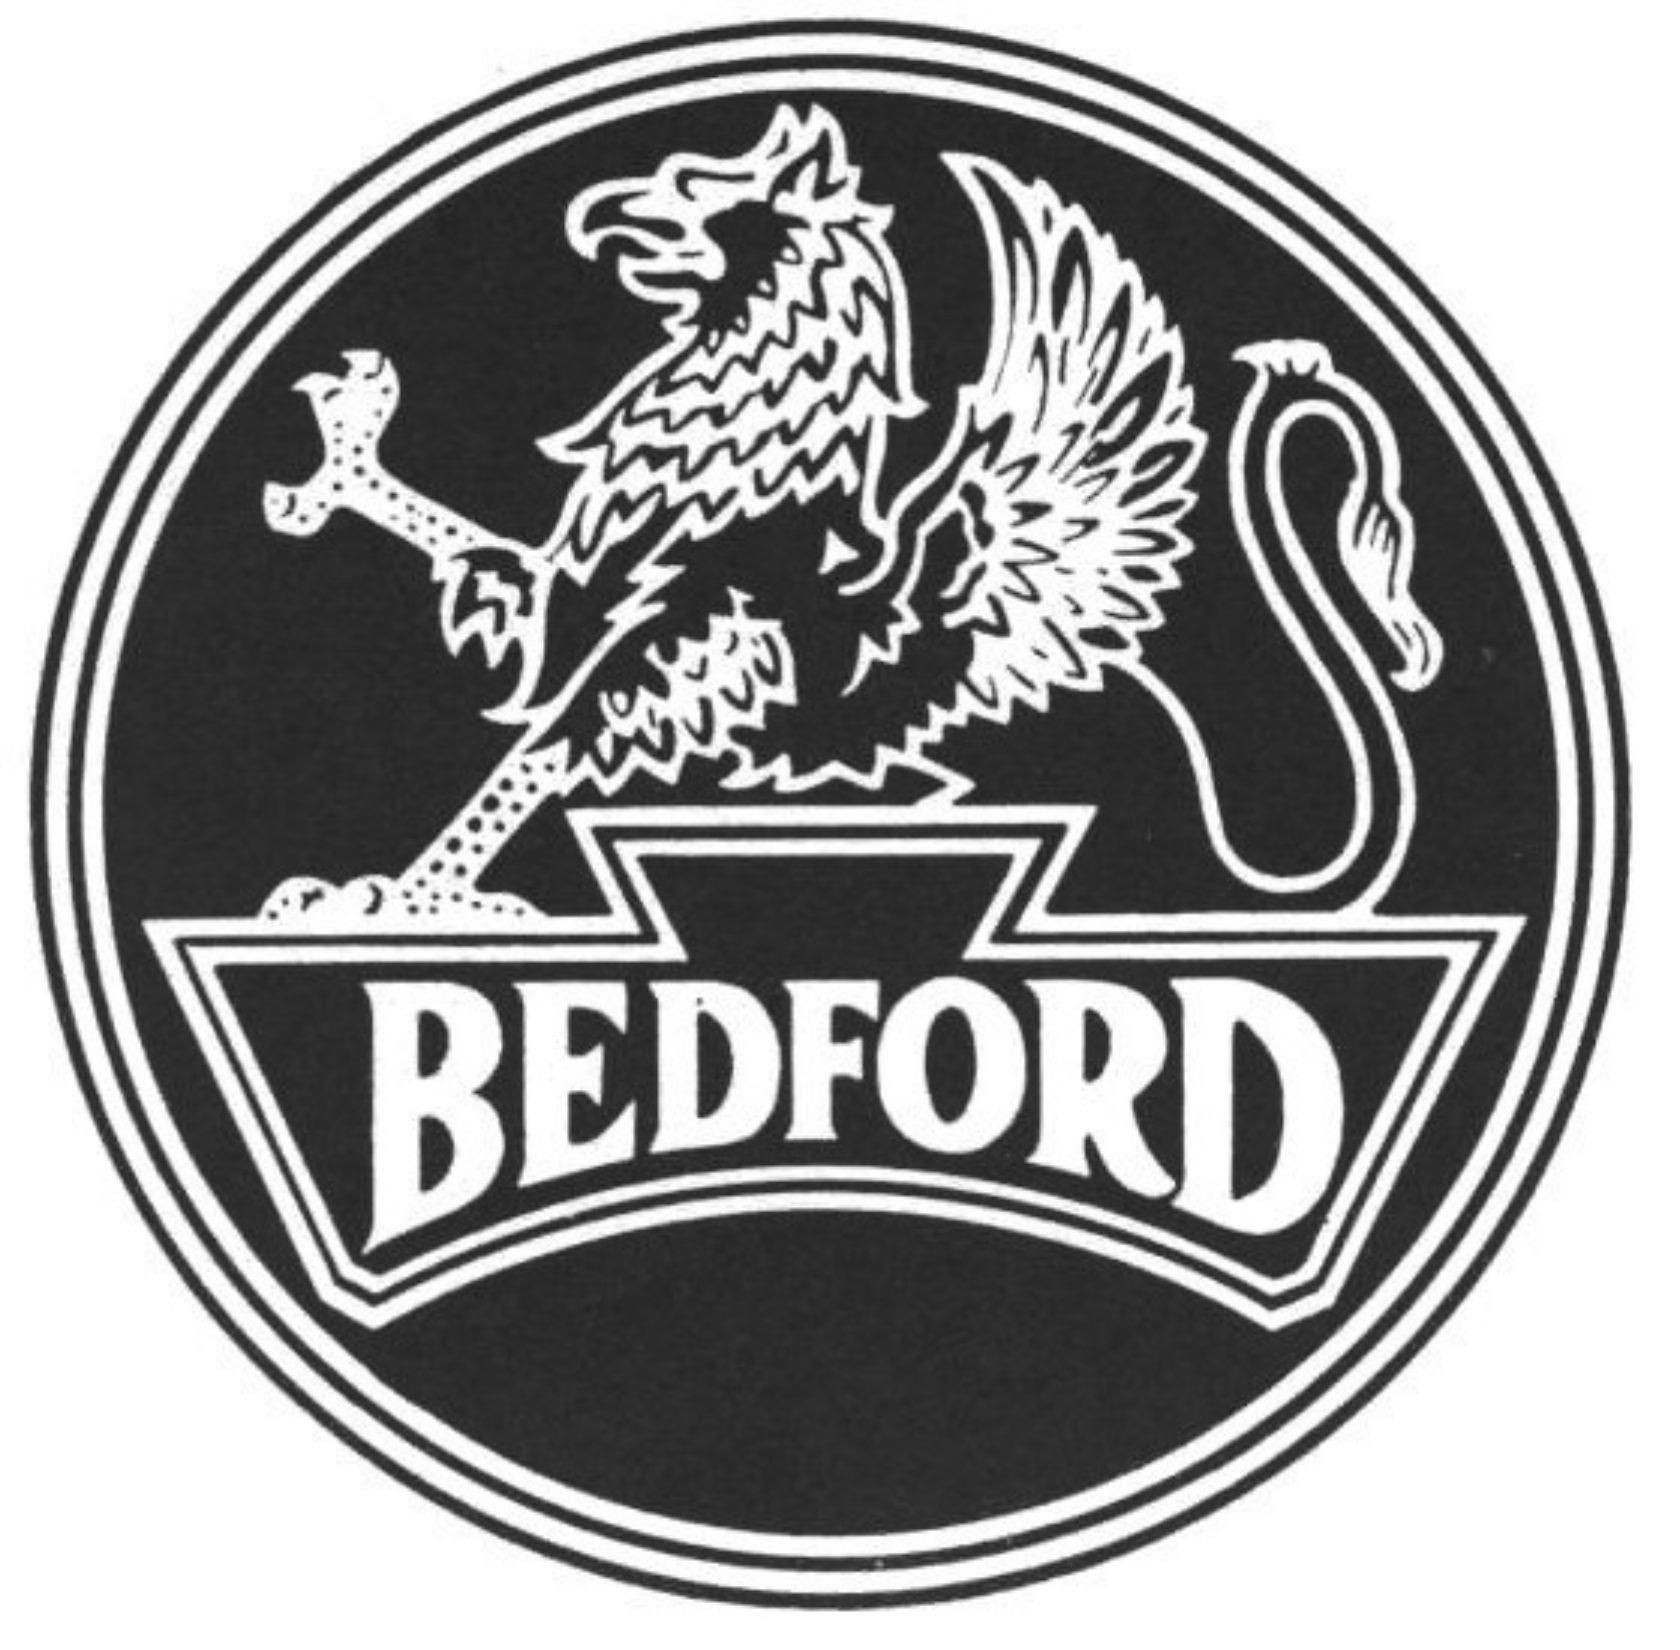 Bedford Logo - Bedford. National Road Transport Hall of Fame